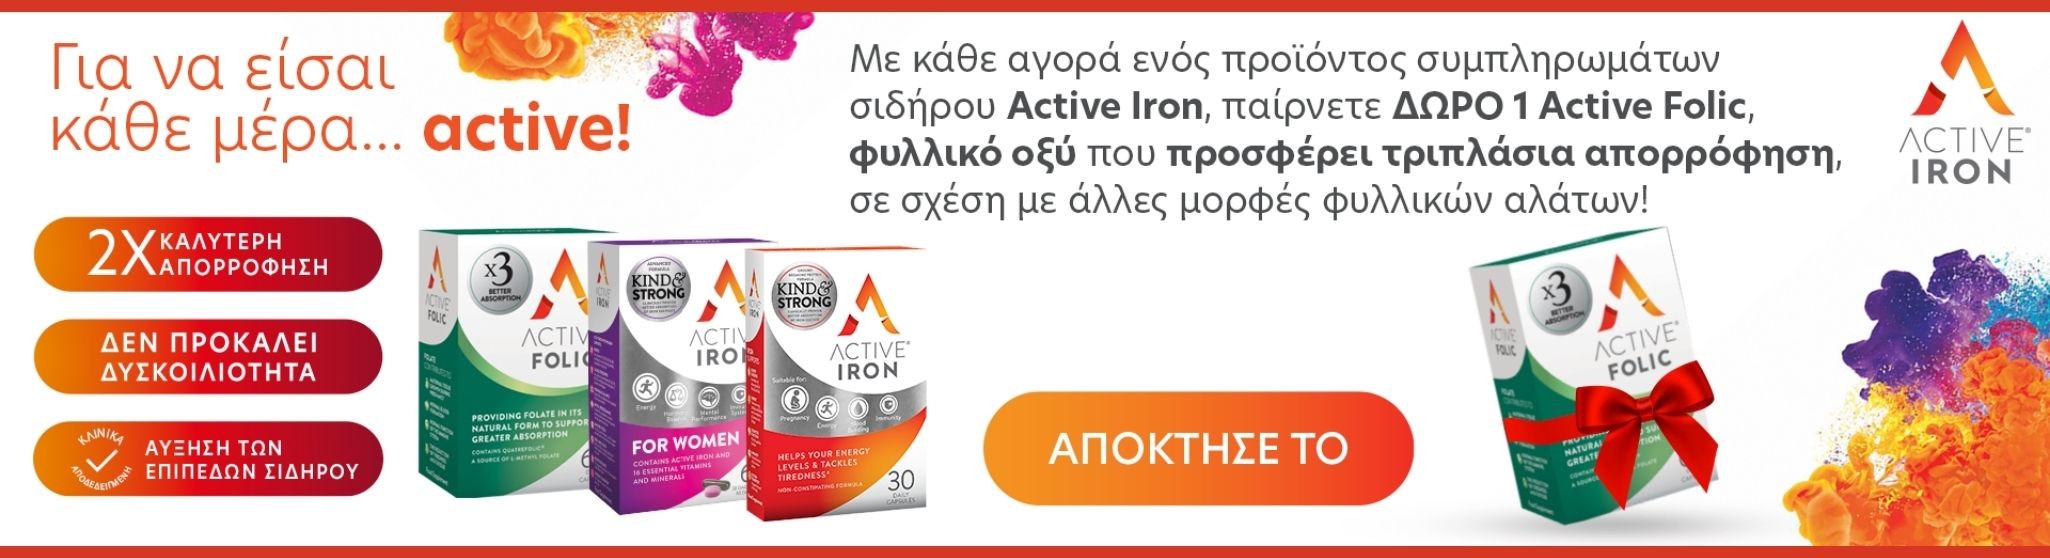 Active Iron folic gift